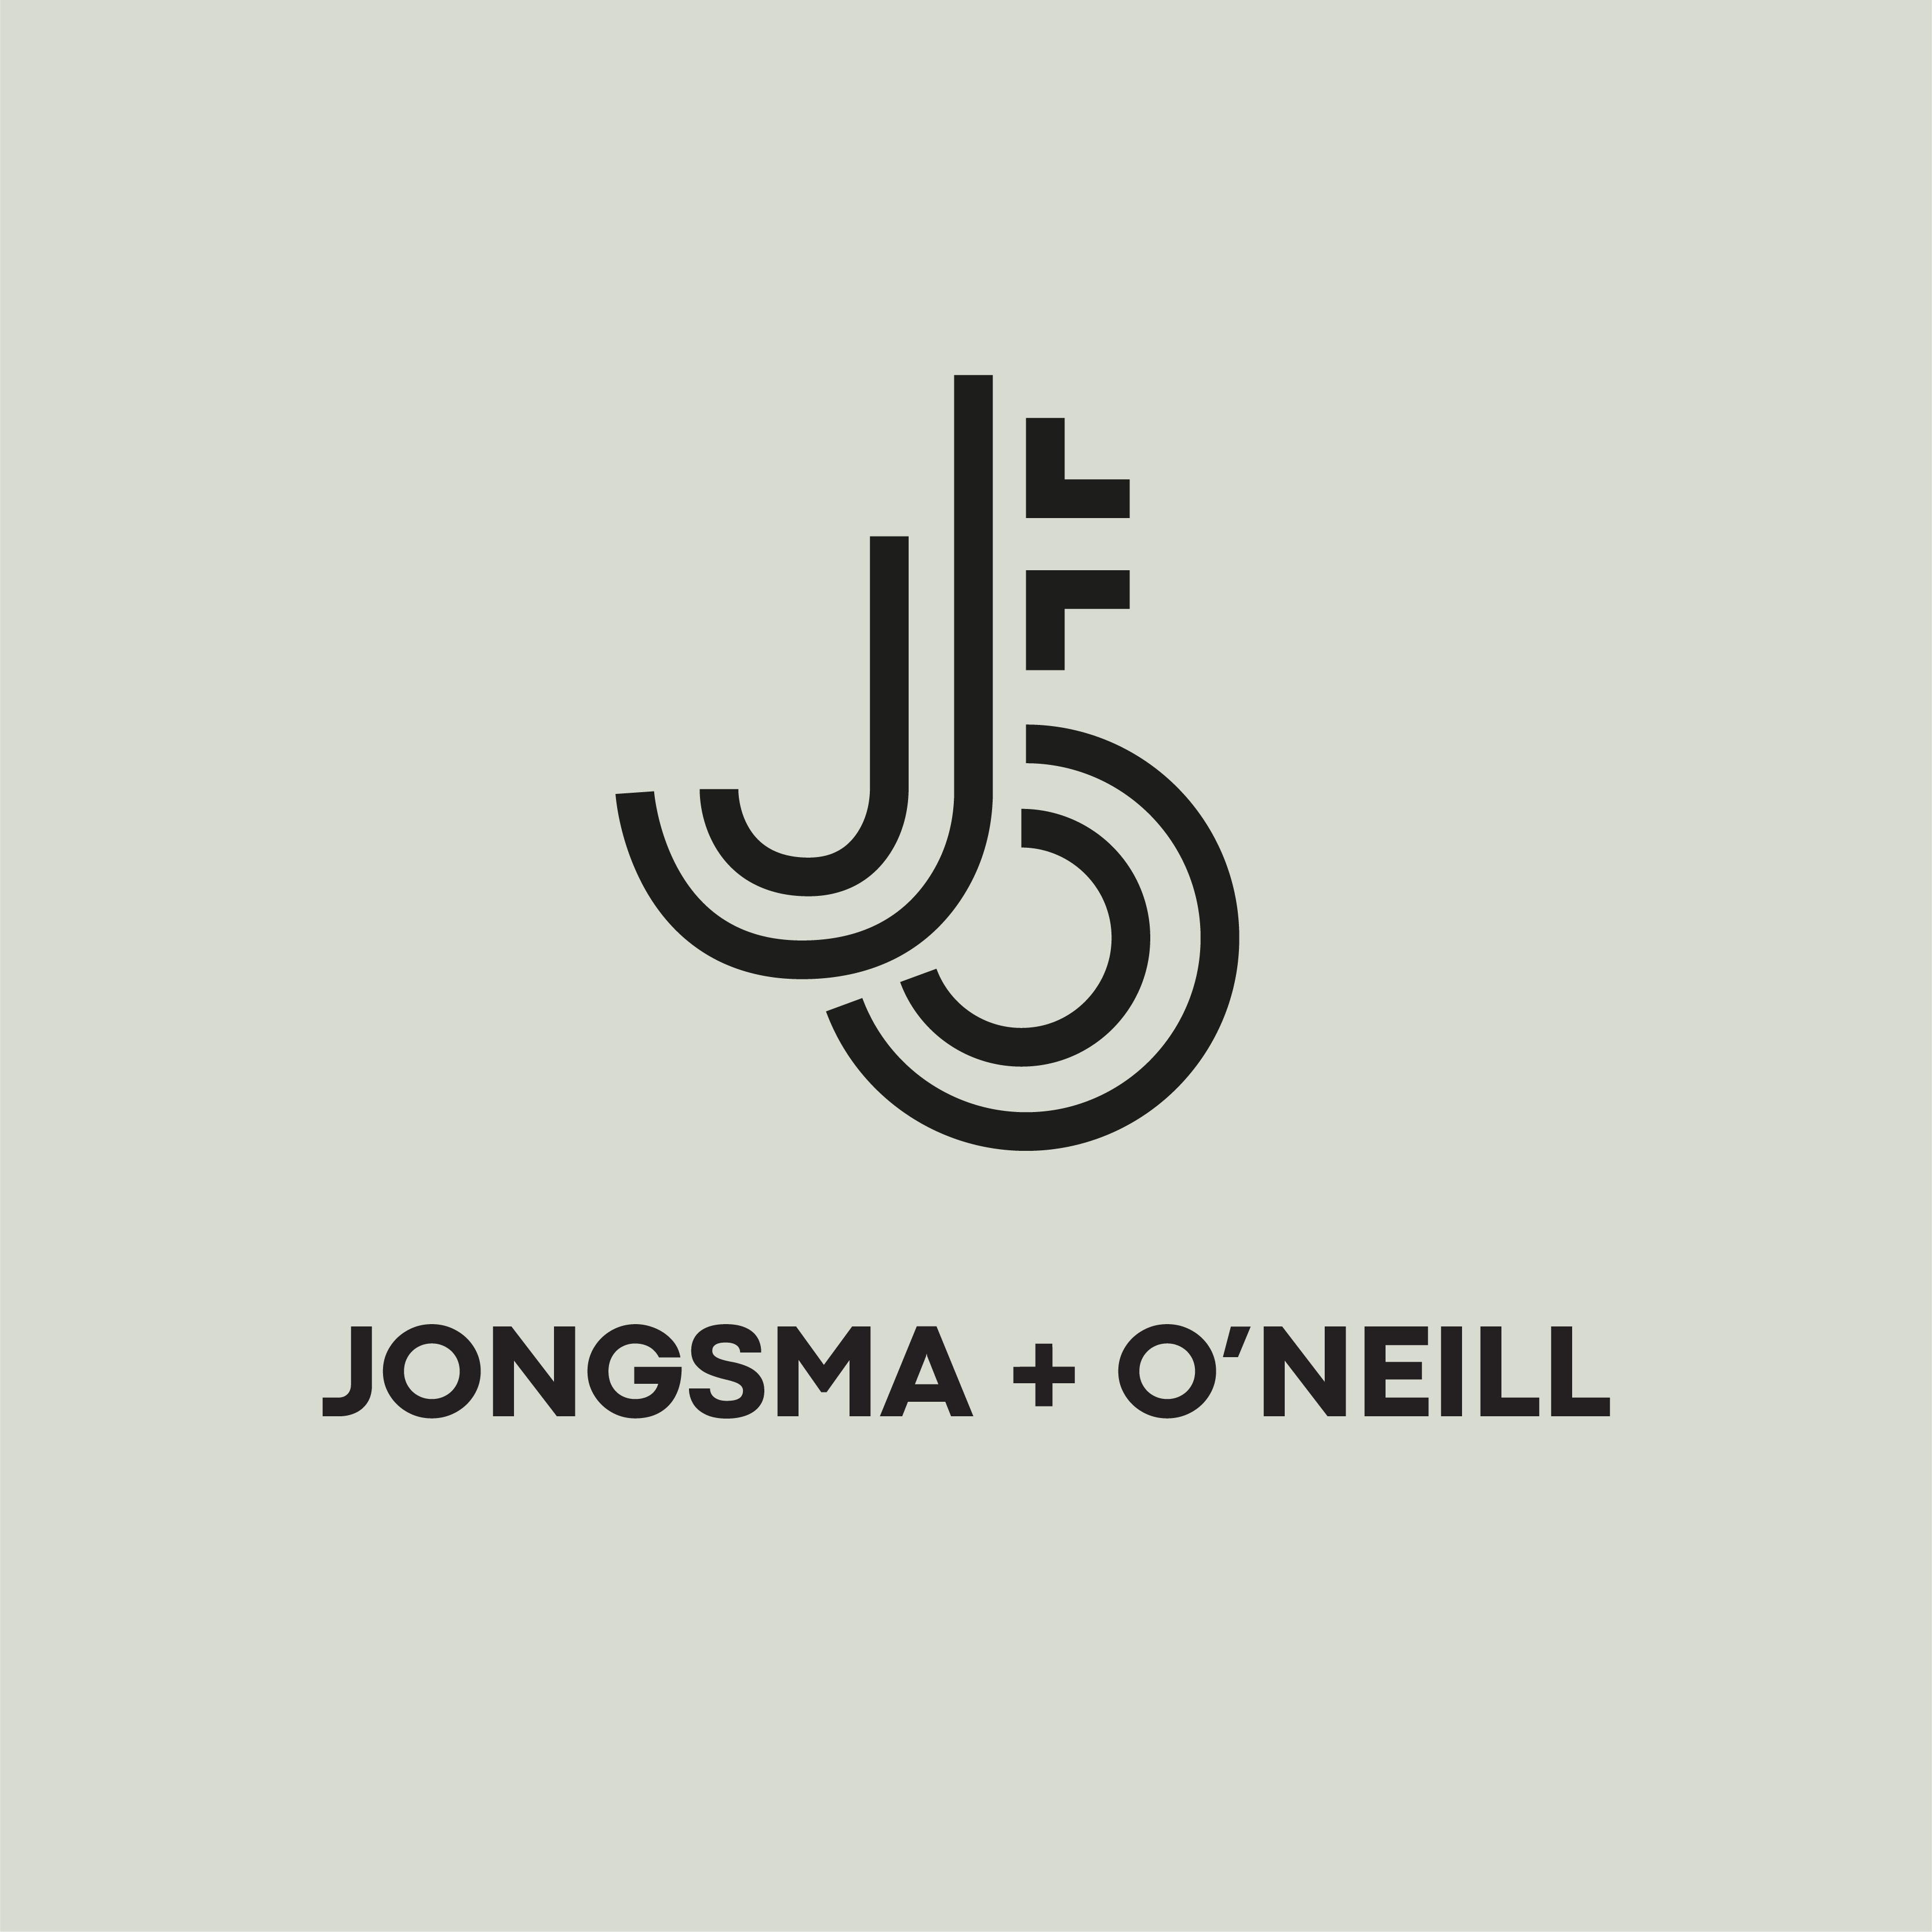 Jongsma + O'Neill